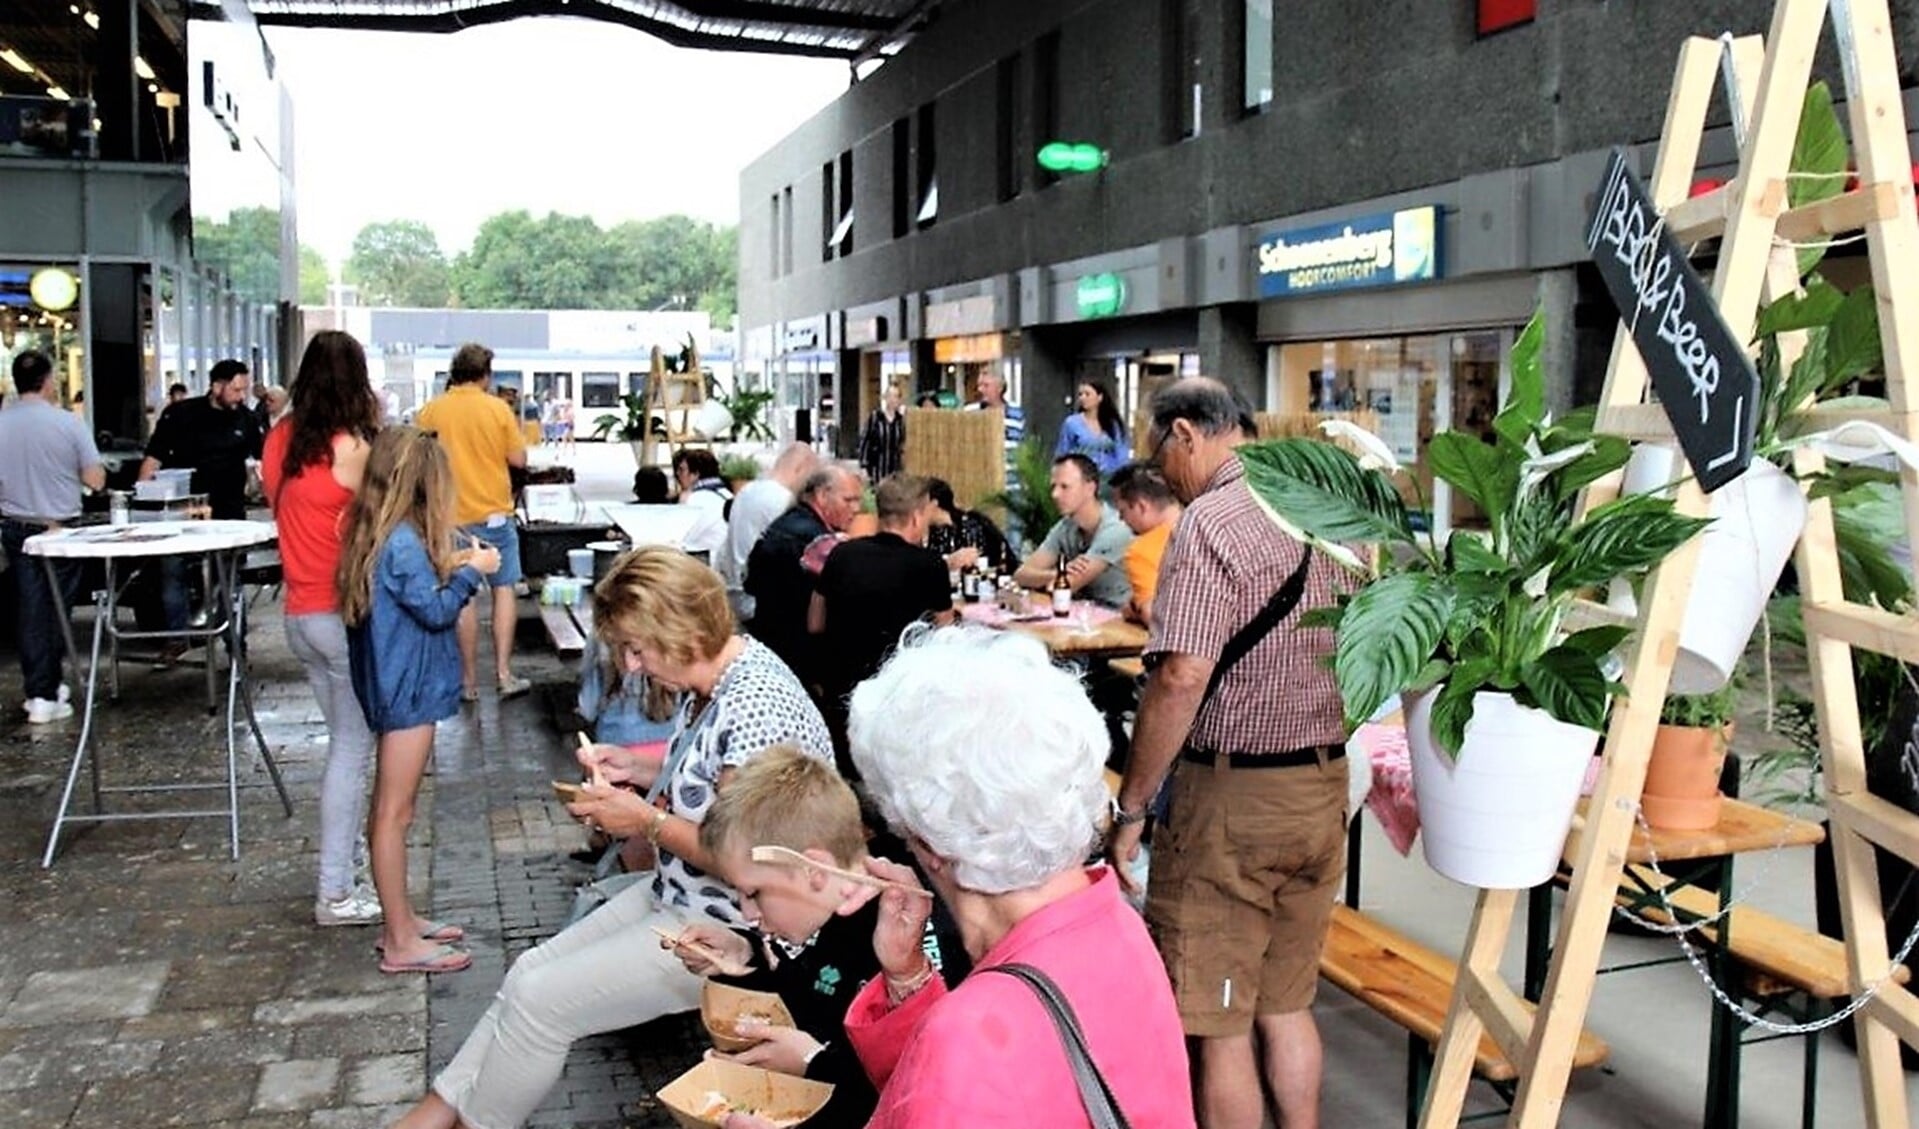 Gezellige drukte tijdens het zomerfeest met BBQ in Leidsenhage (foto: Ap de Heus).